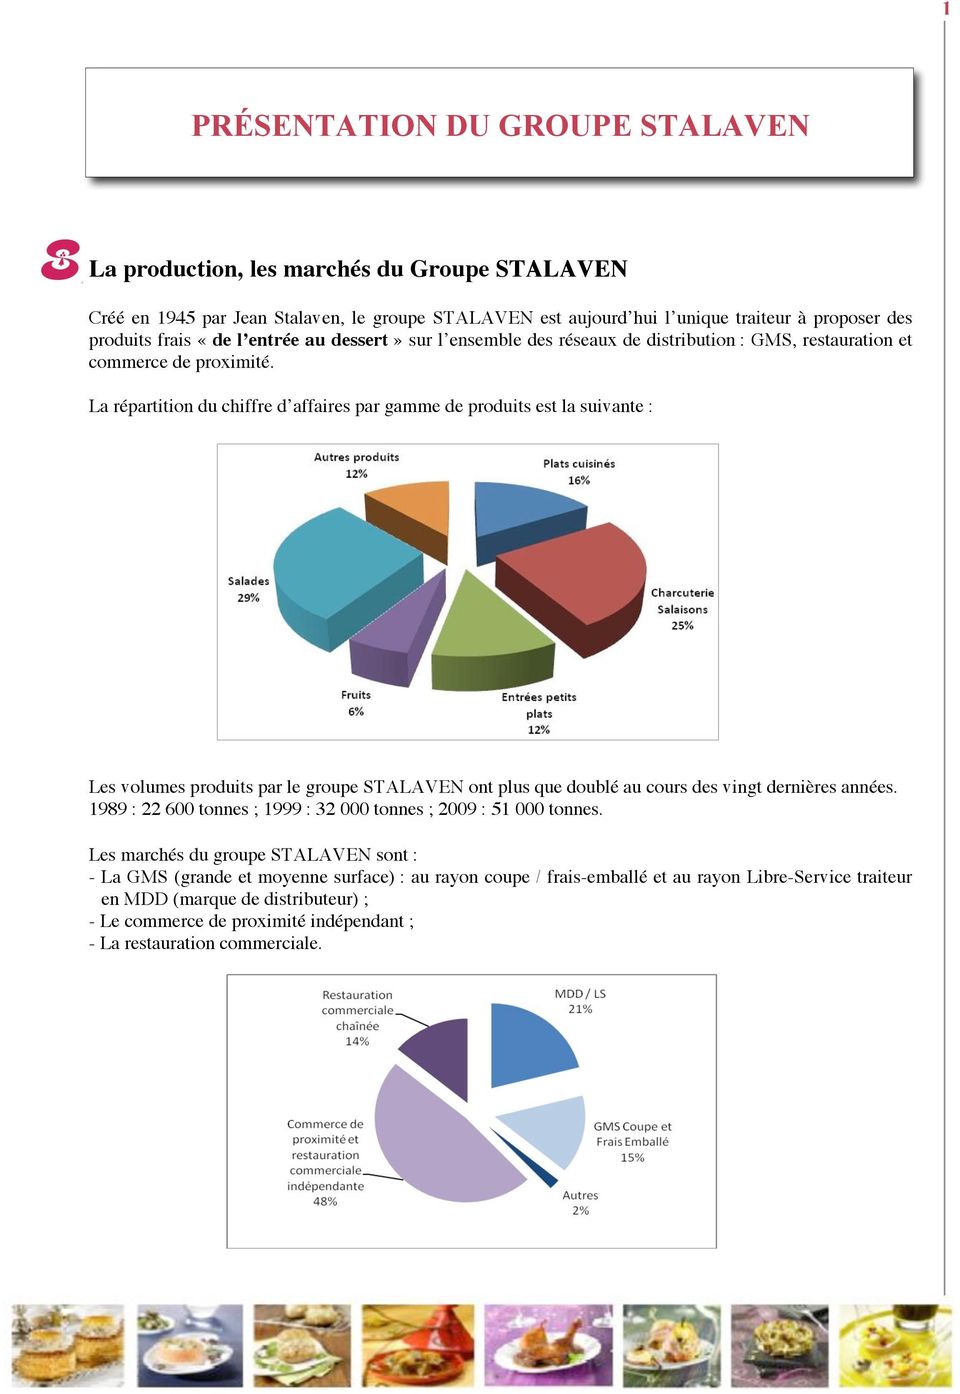 La répartition du chiffre d affaires par gamme de produits est la suivante : Les volumes produits par le groupe STALAVEN ont plus que doublé au cours des vingt dernières années.